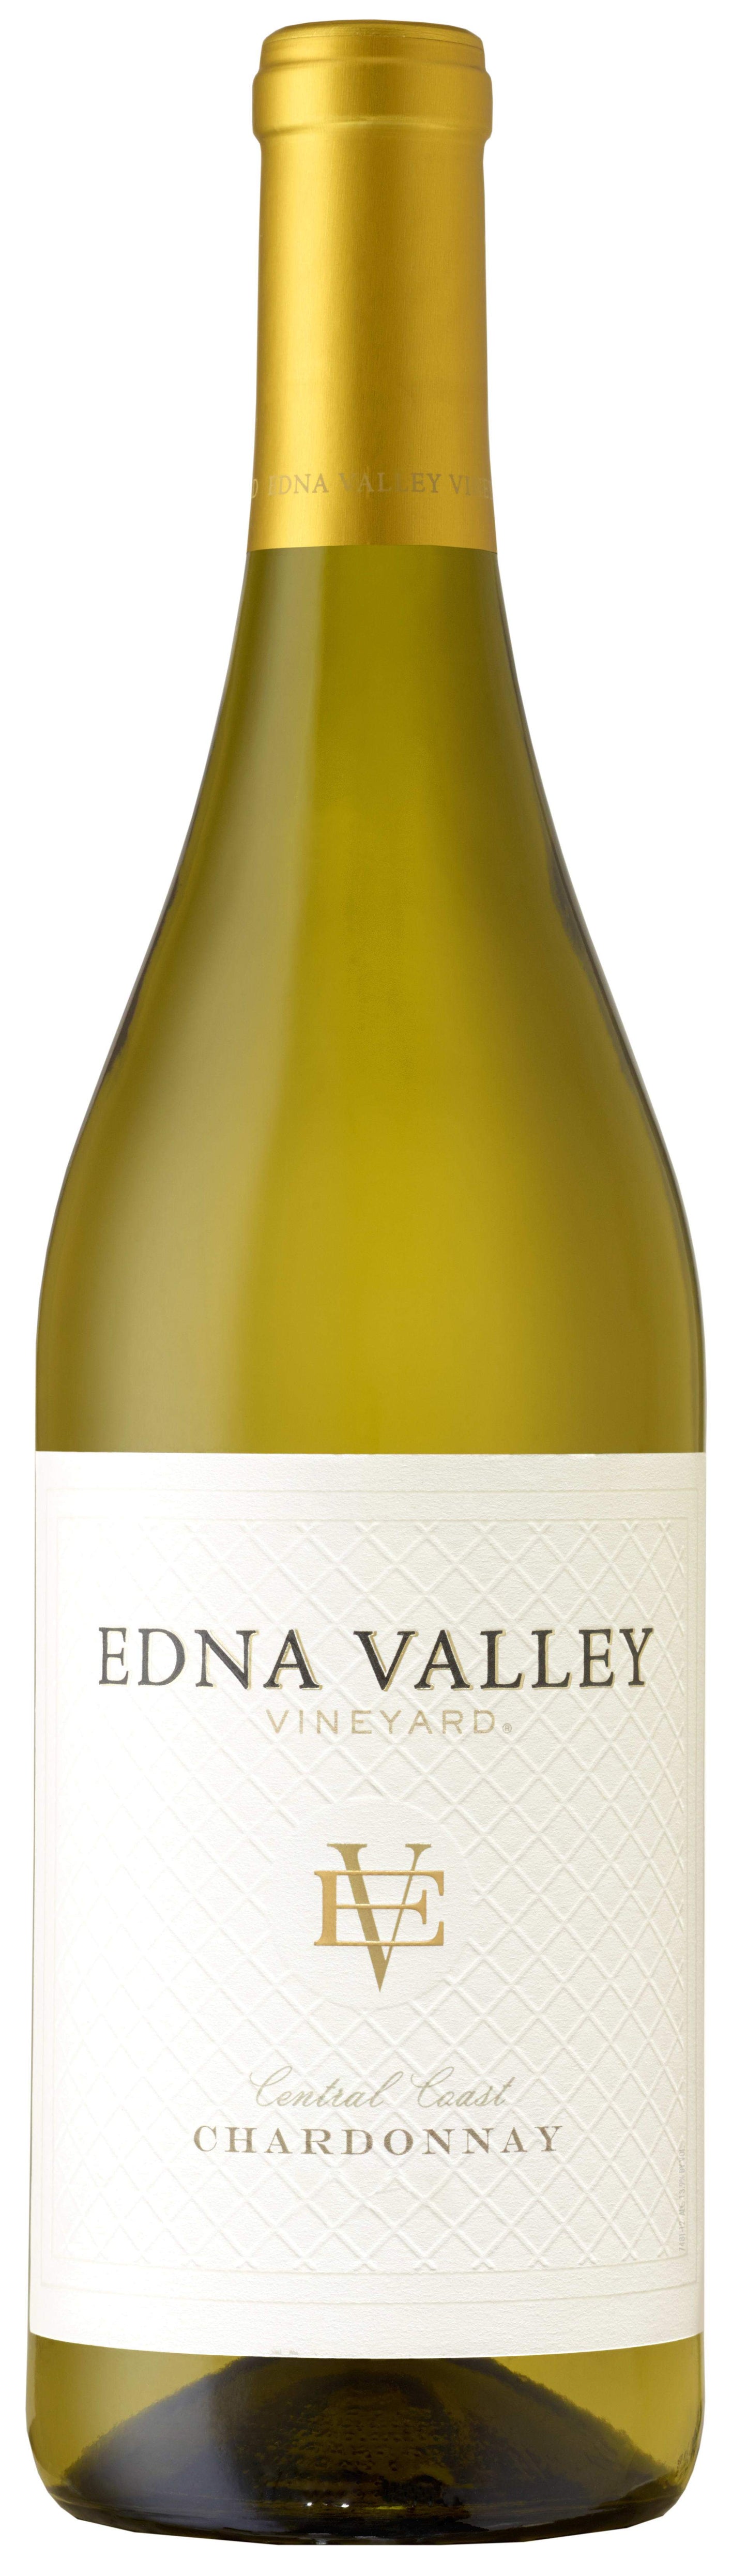 Edna Valley Vineyard Chardonnay 2017